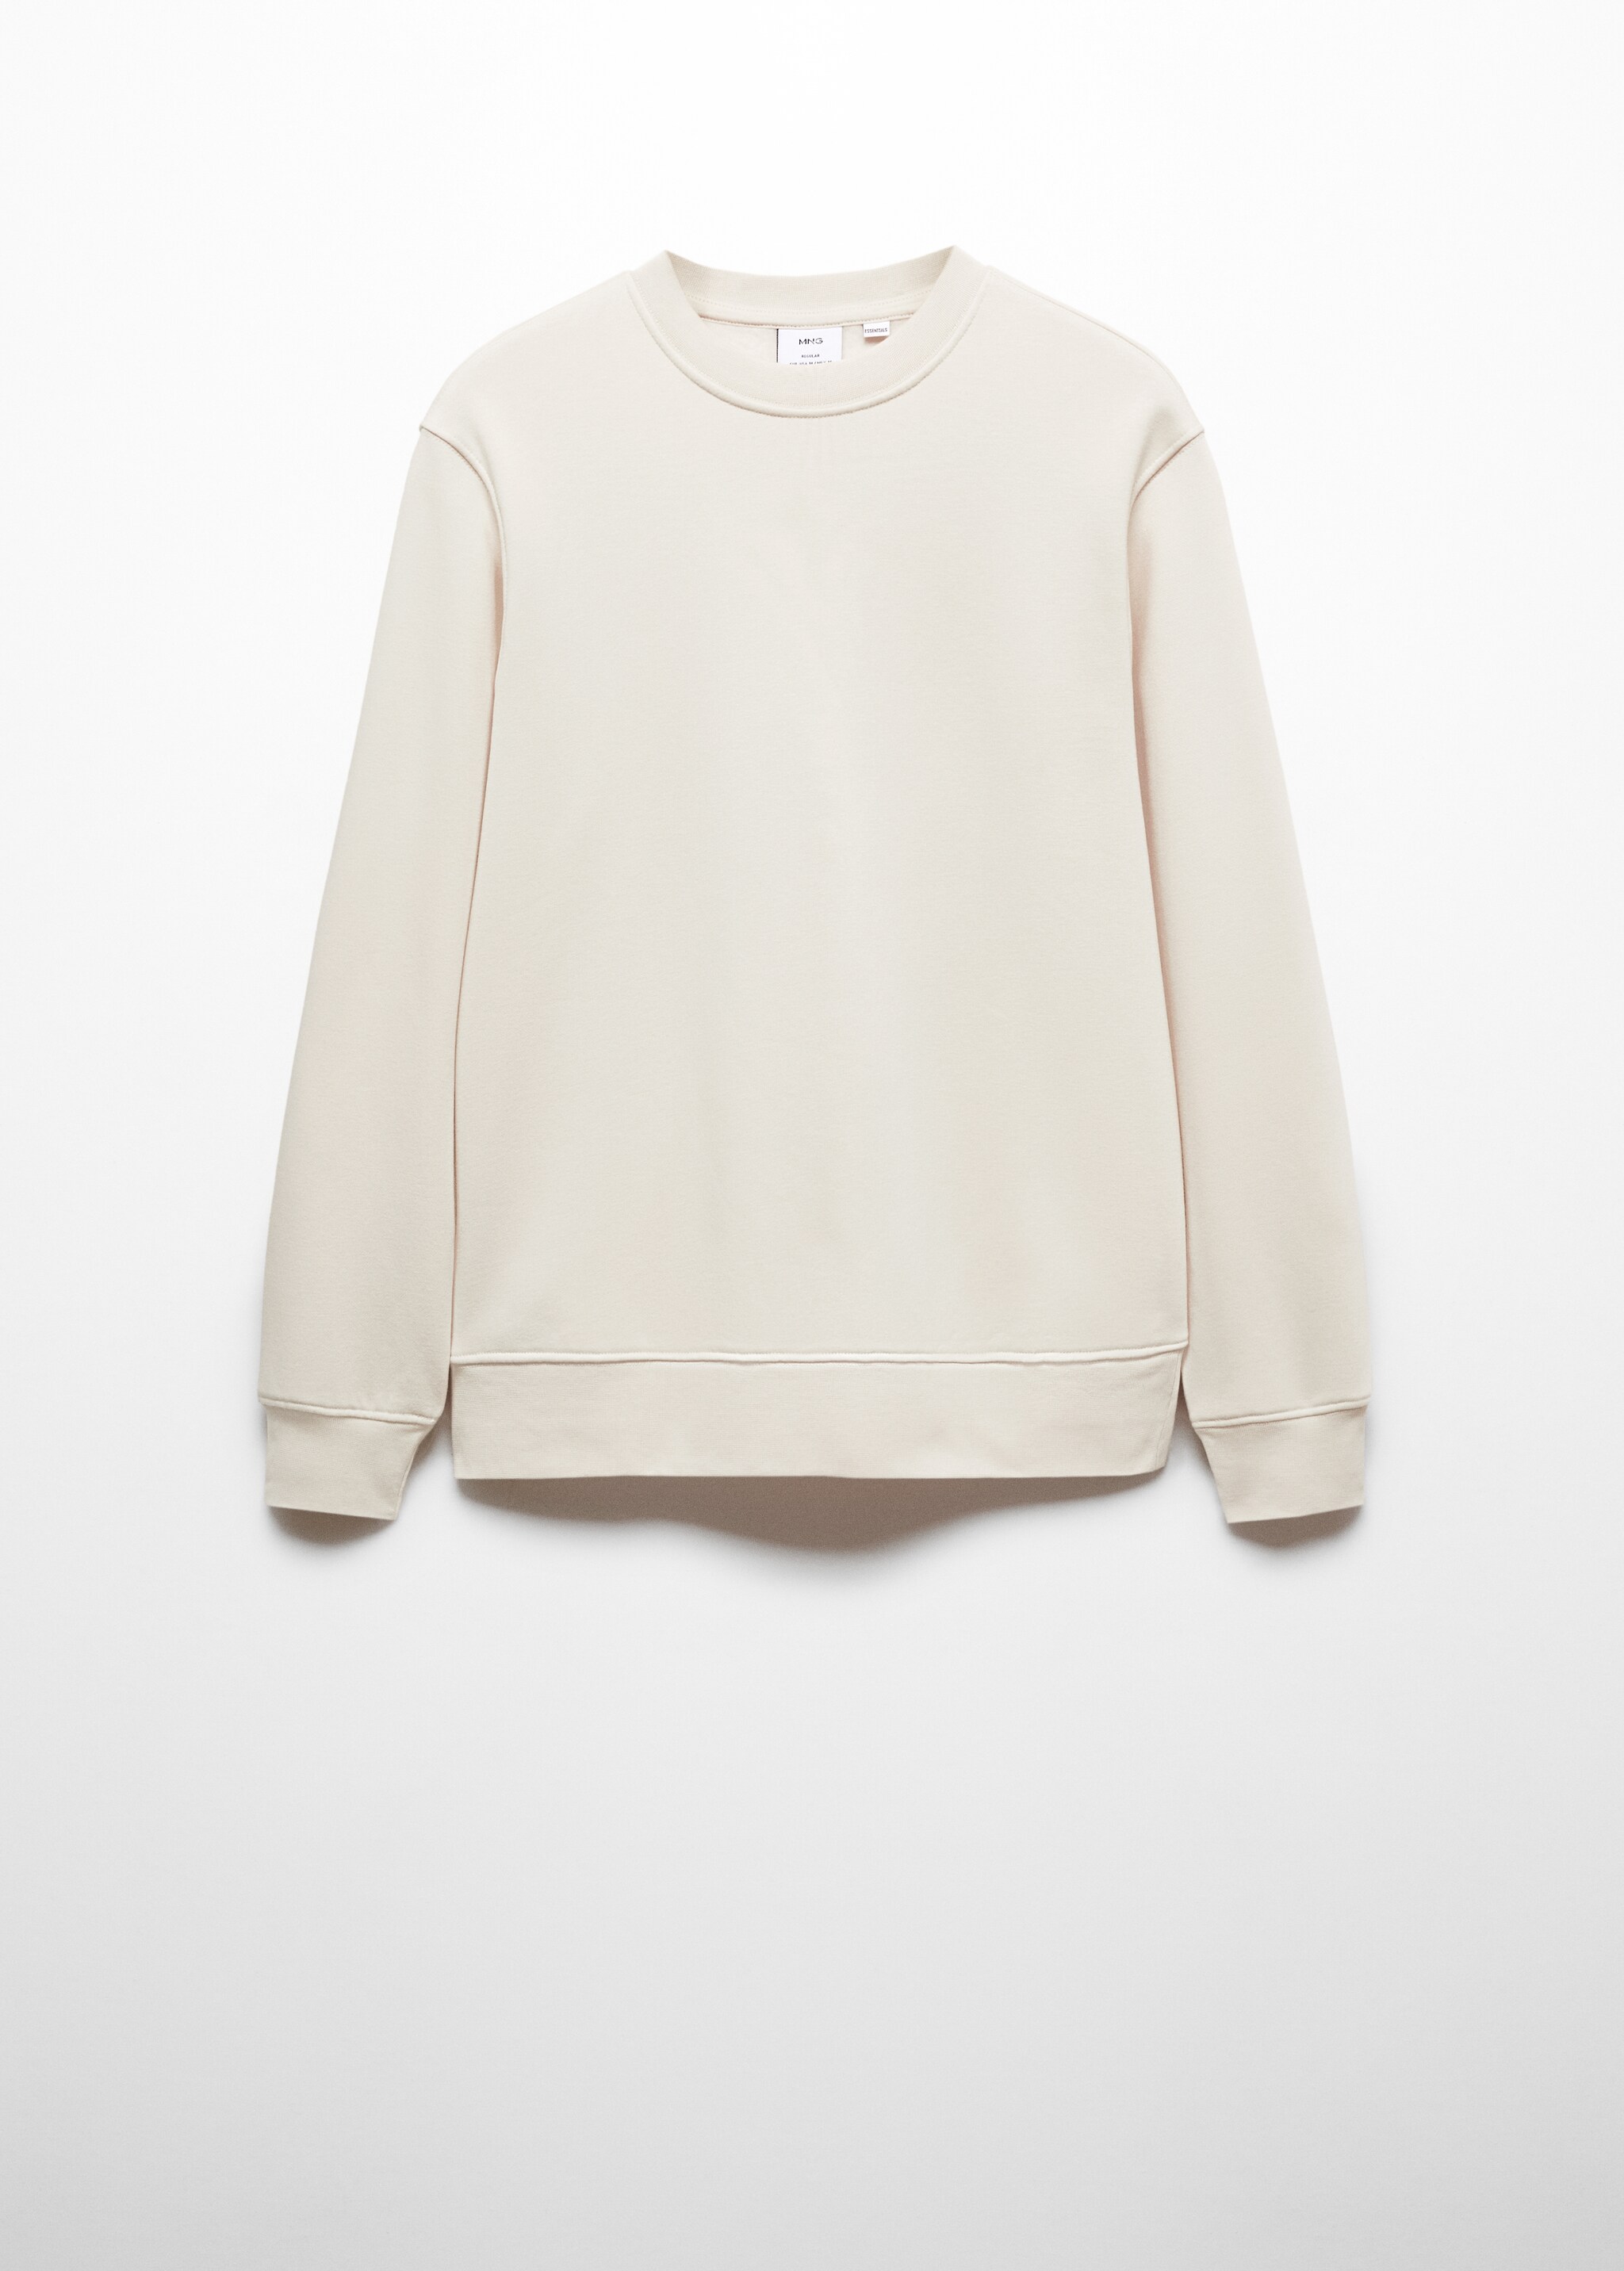 Sweatshirt leve de algodão - Artigo sem modelo